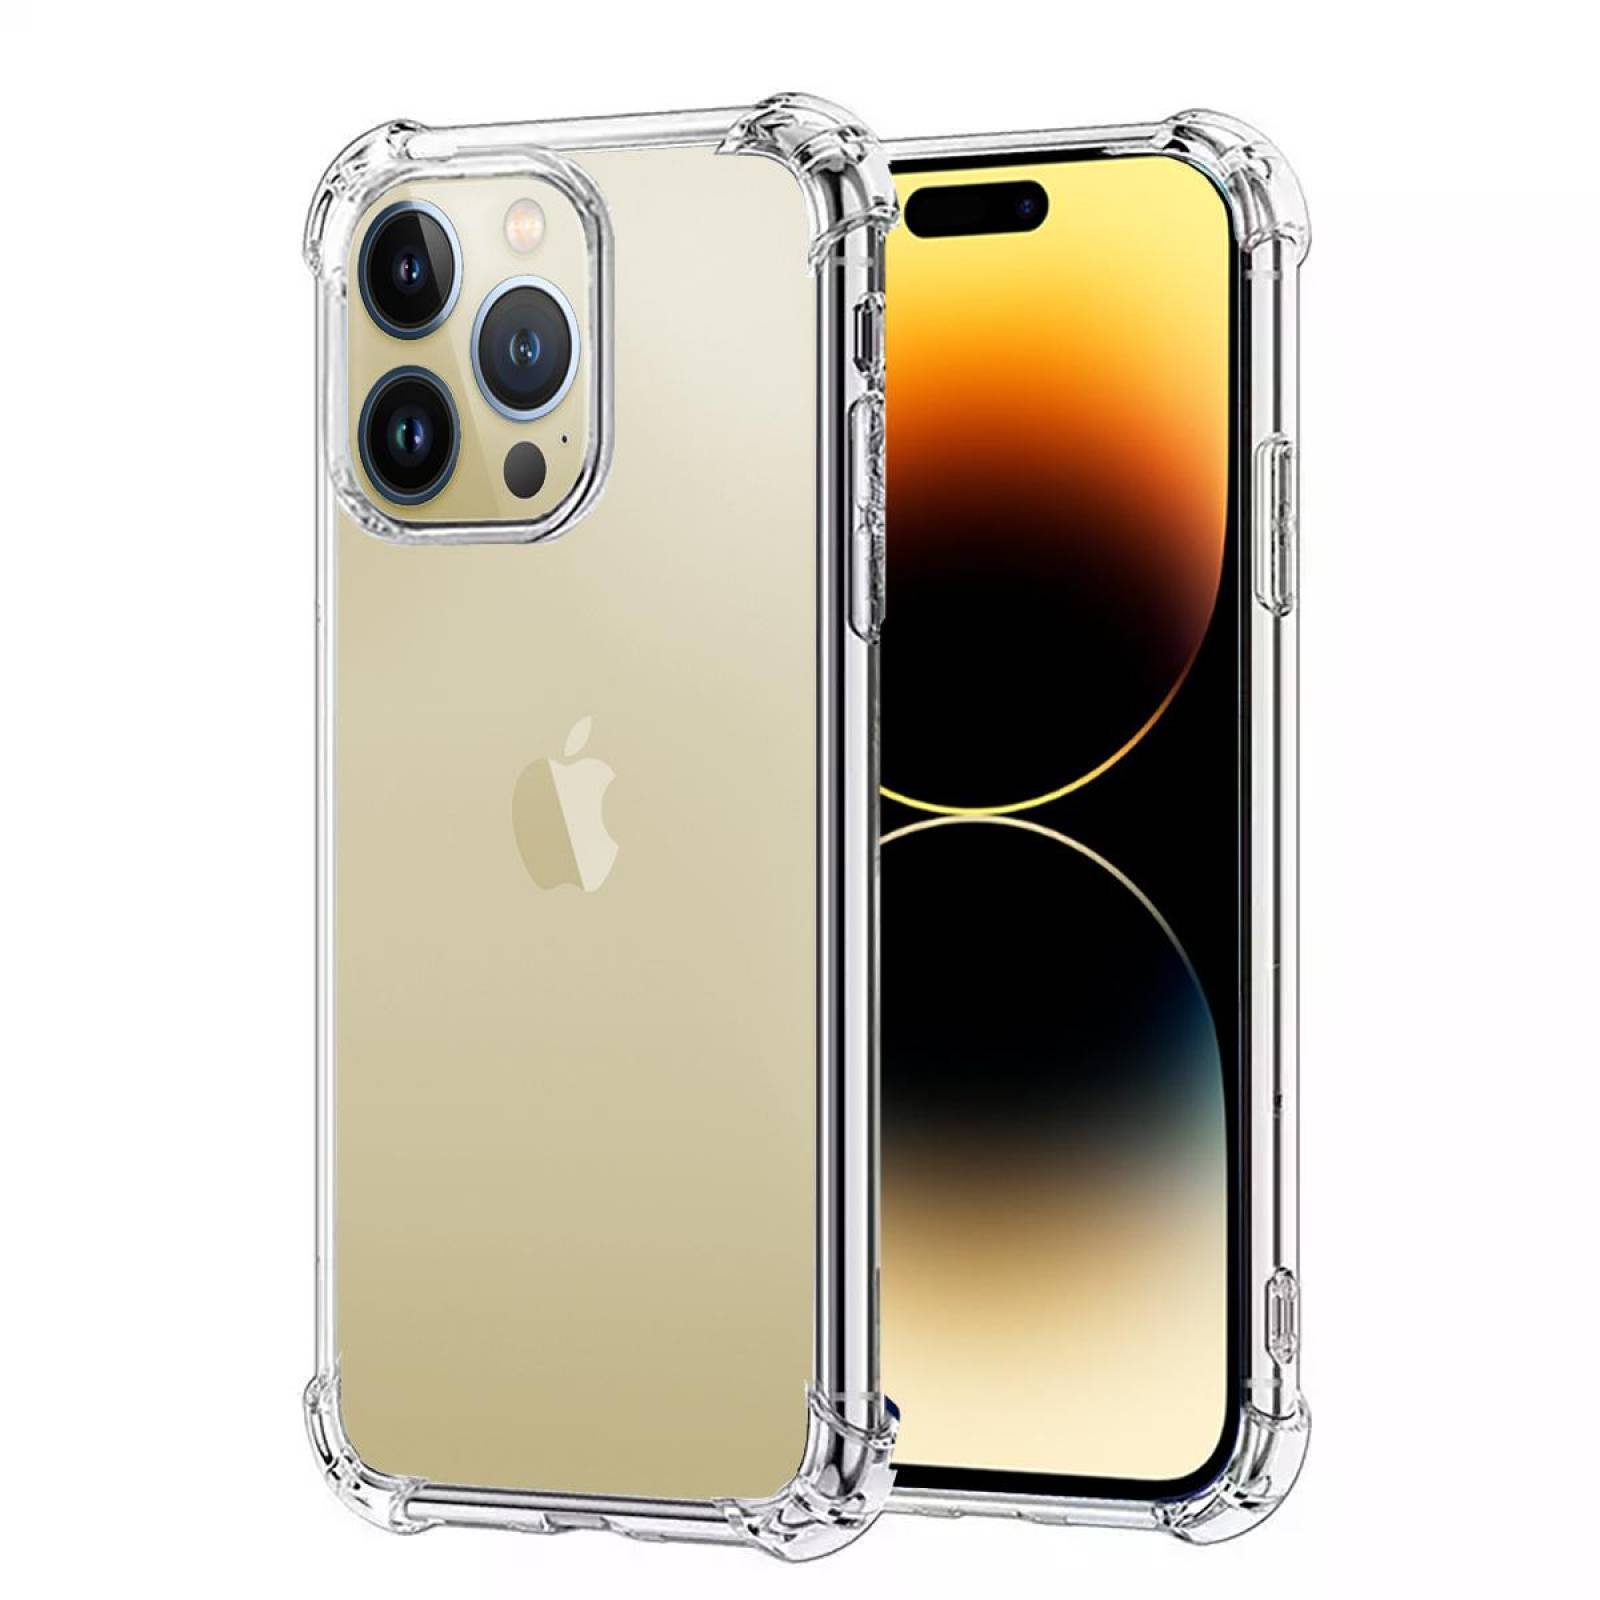 Funda MagSafe transparente y metal iPhone 14 Pro Max (dorado) - Funda -movil.es